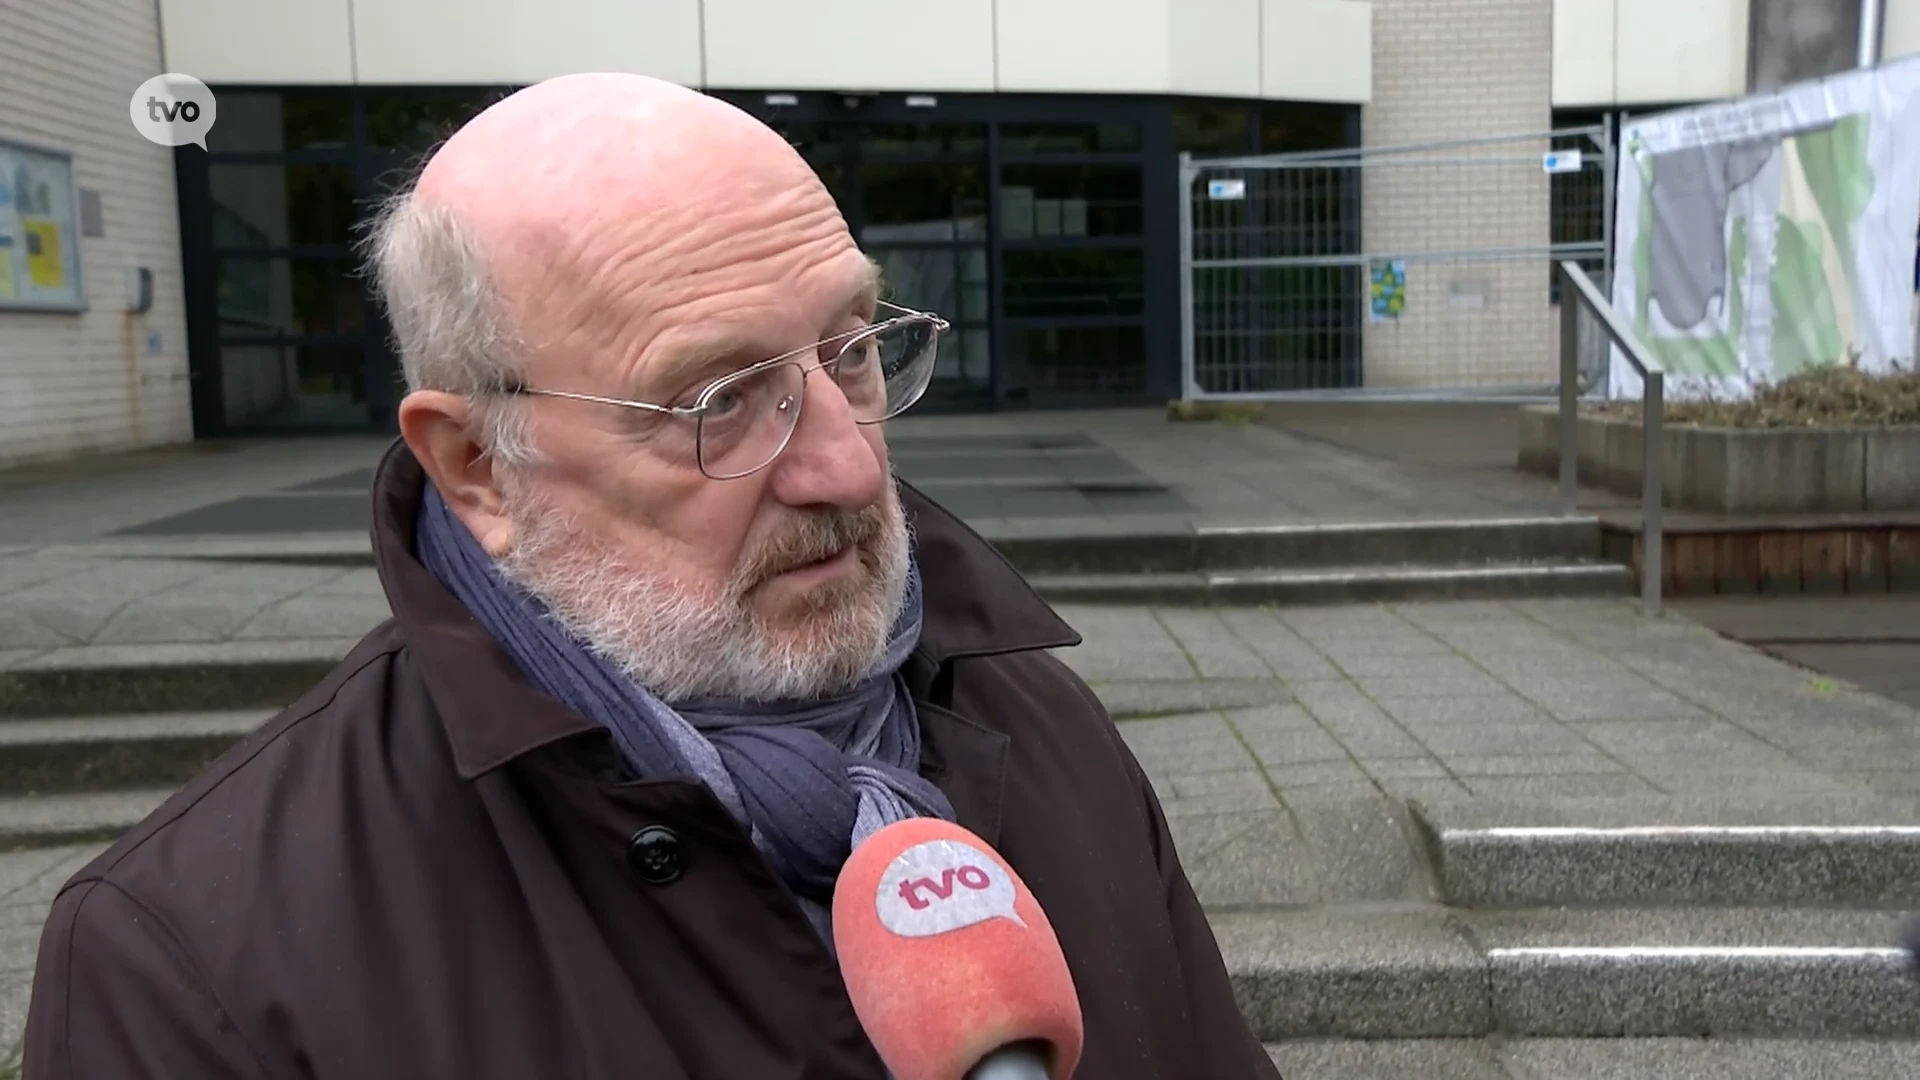 Burgemeester Zwijndrecht over Marc Van de Vijver: "Hij is zich in Zwijndrecht komen moeien om propaganda te voeren"